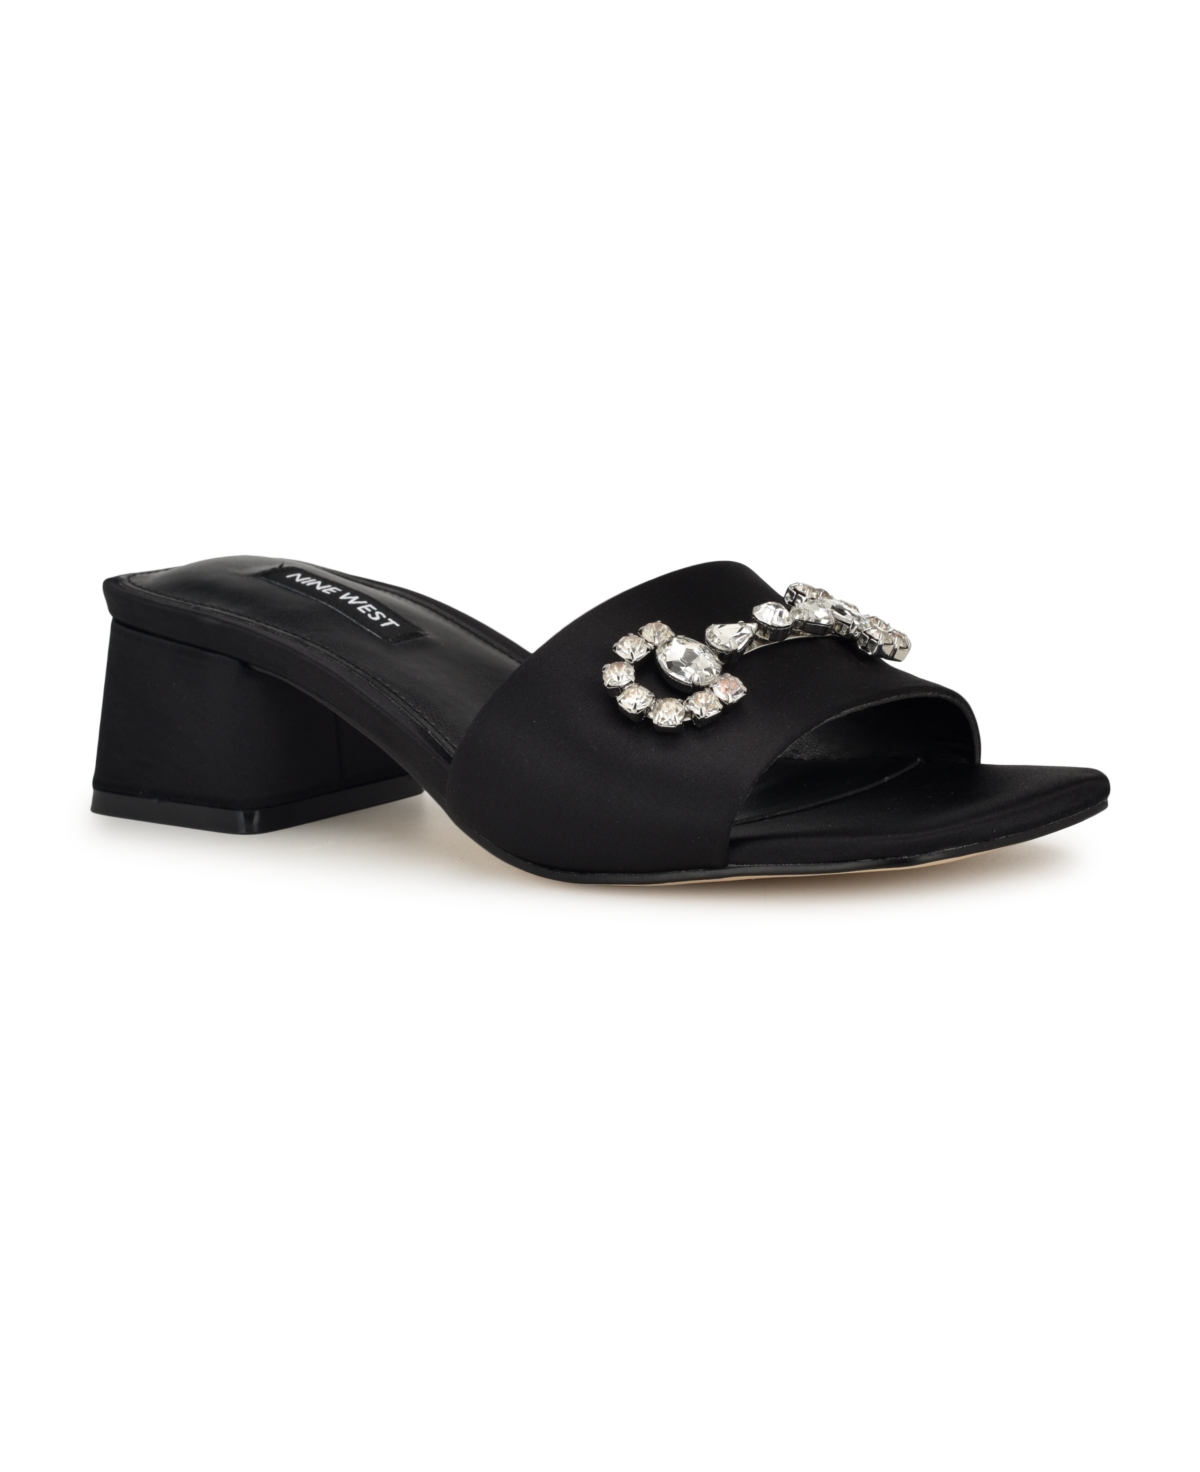 Women's Bamsy Square Toe Slip-on Dress Sandals - Black Satin